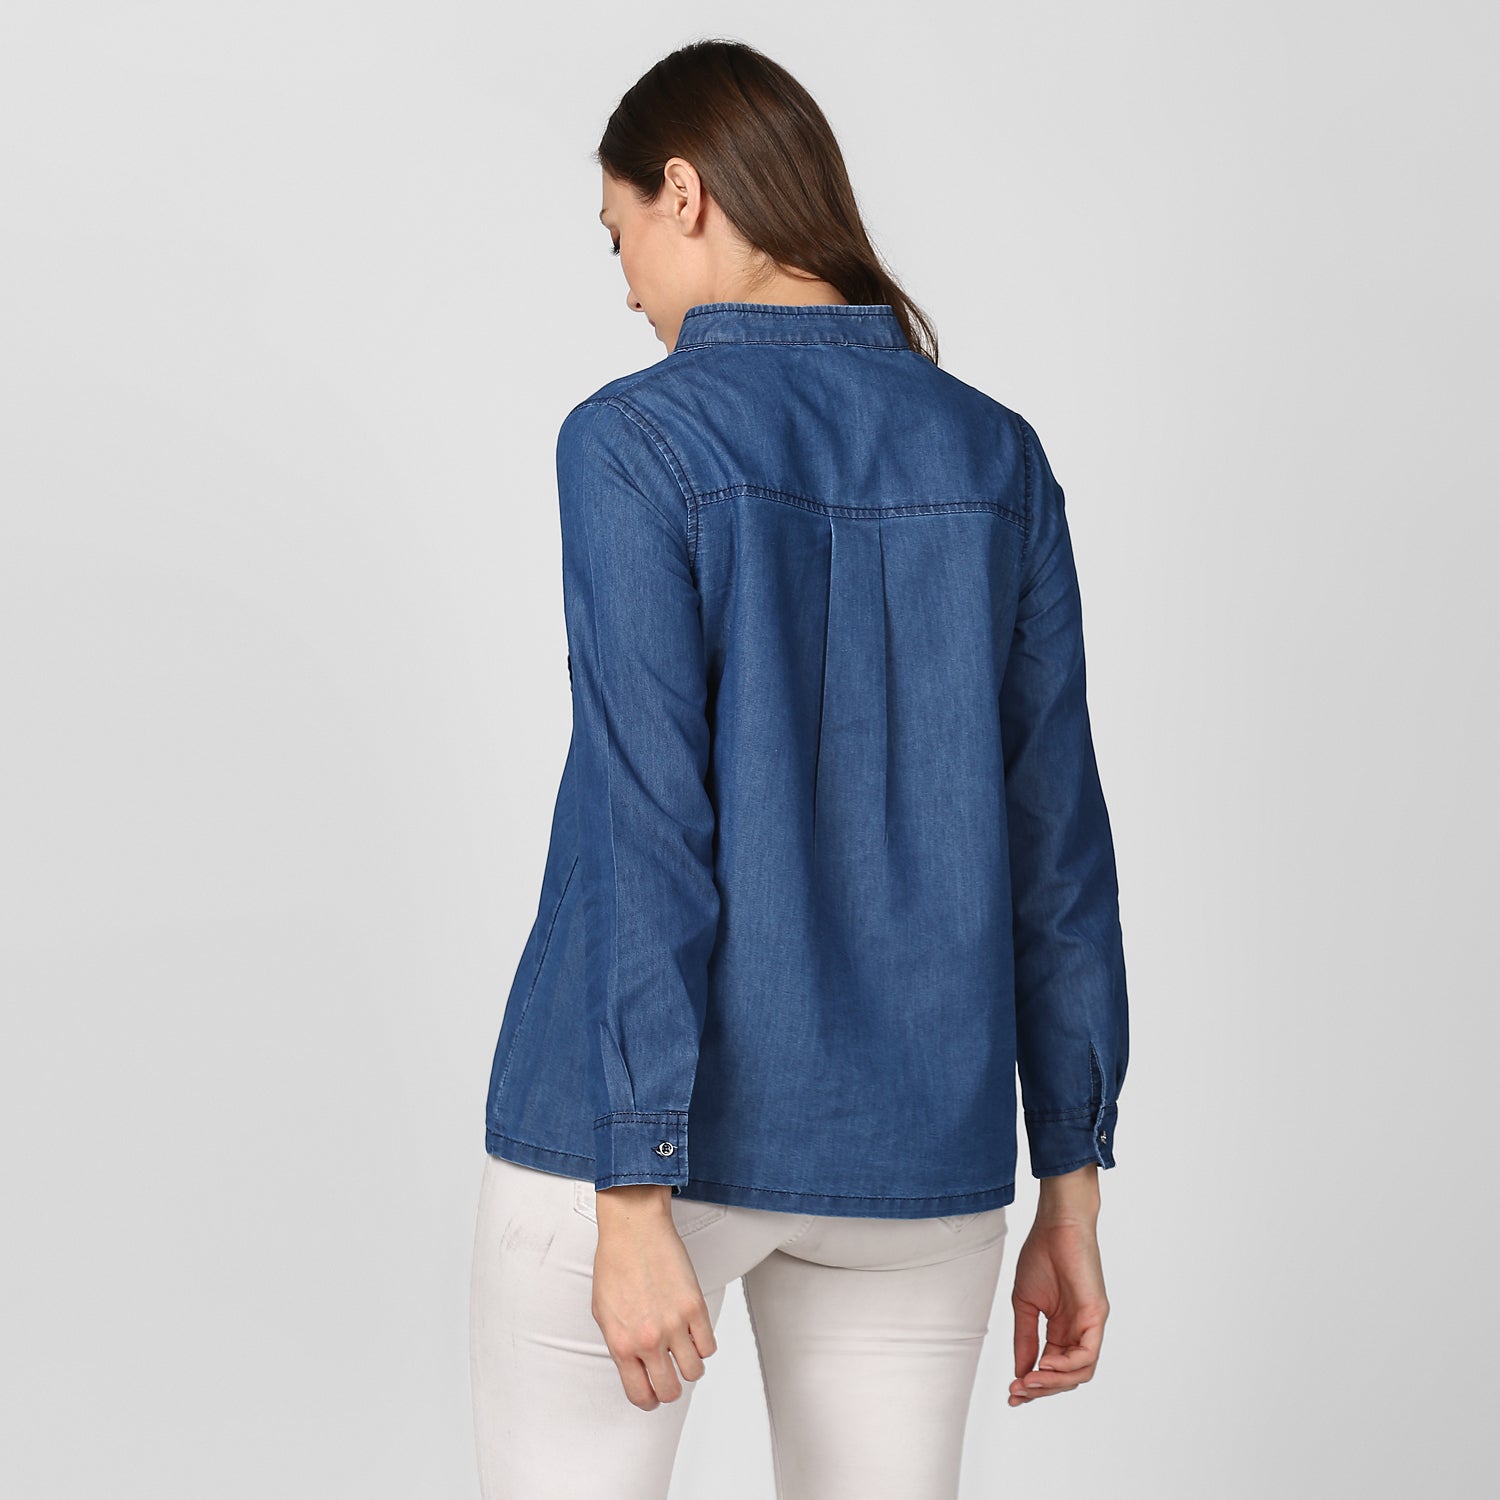 Women's Blue Denim Top cum shirt with striped pocket detail - StyleStone